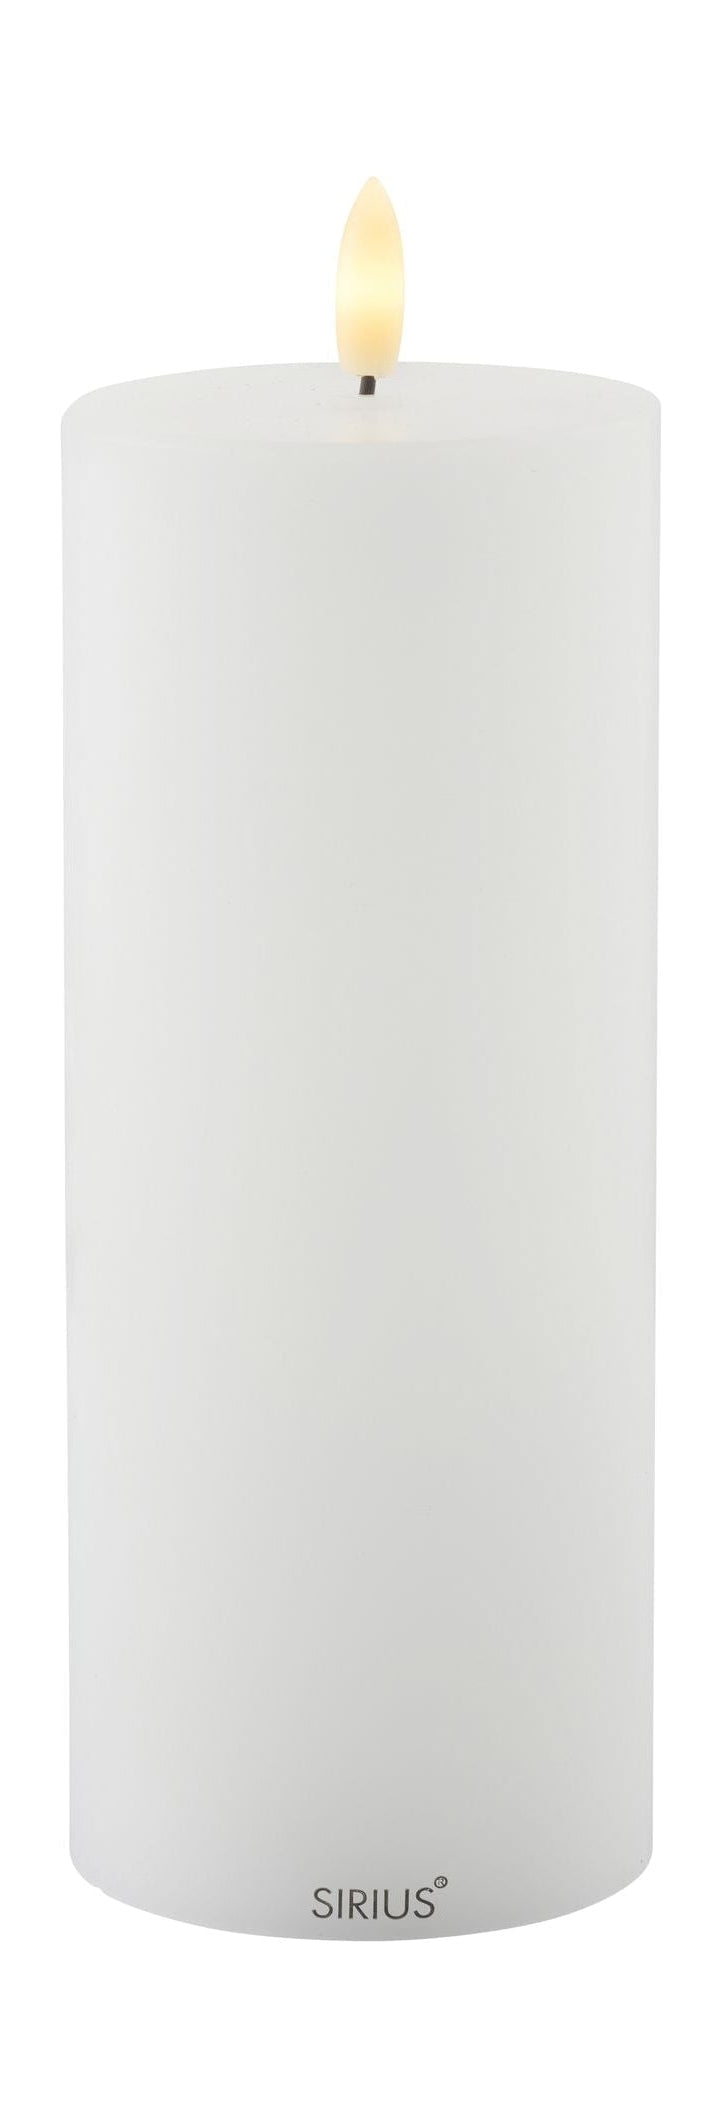 SIRIUS Sille en plein air Cougie blanche, Ø10x H20cm